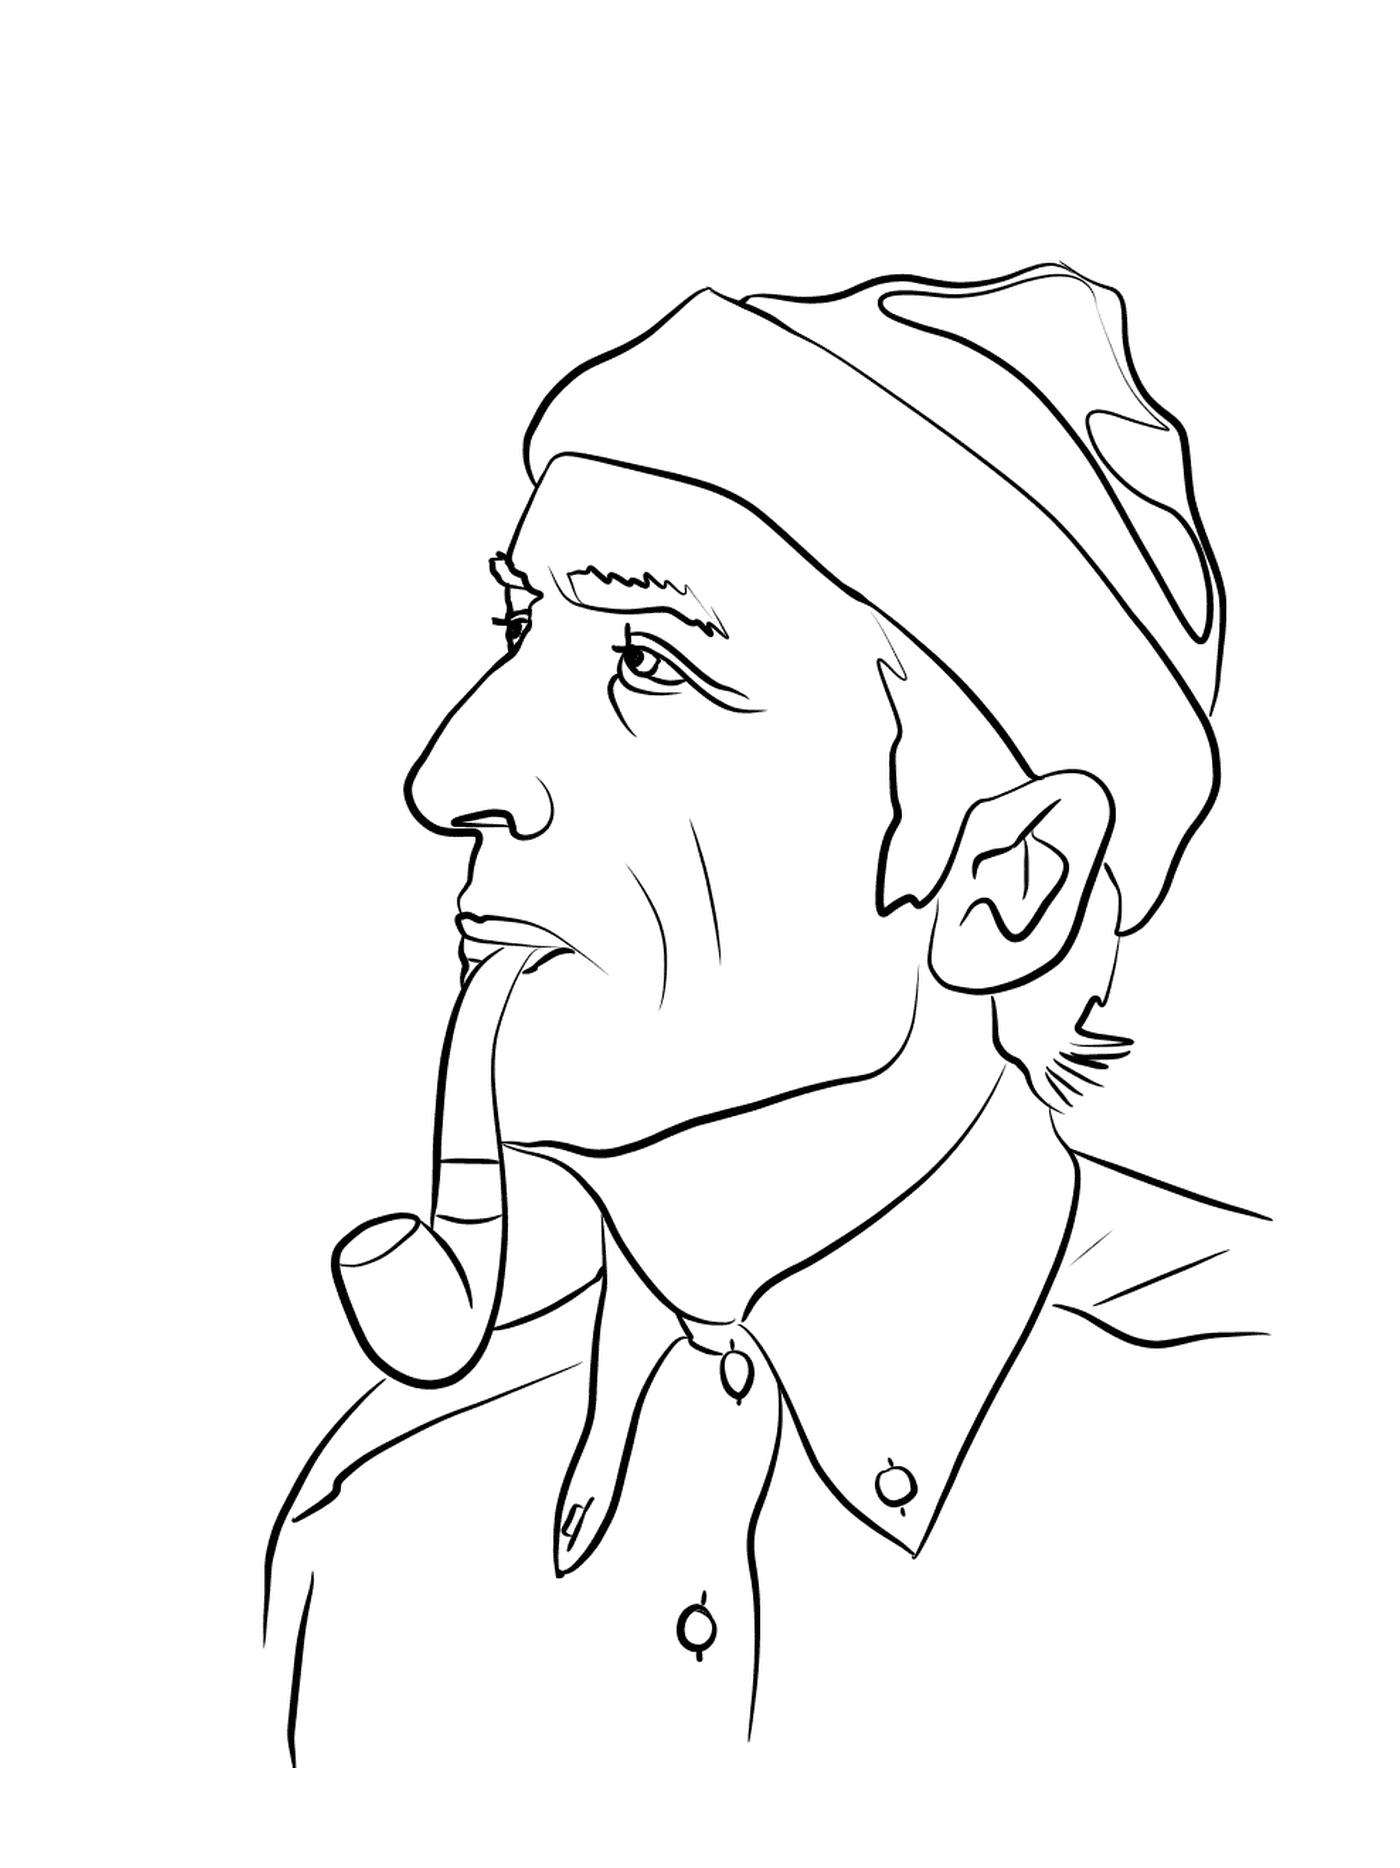   Jacques-Yves Cousteau, explorateur renommé 